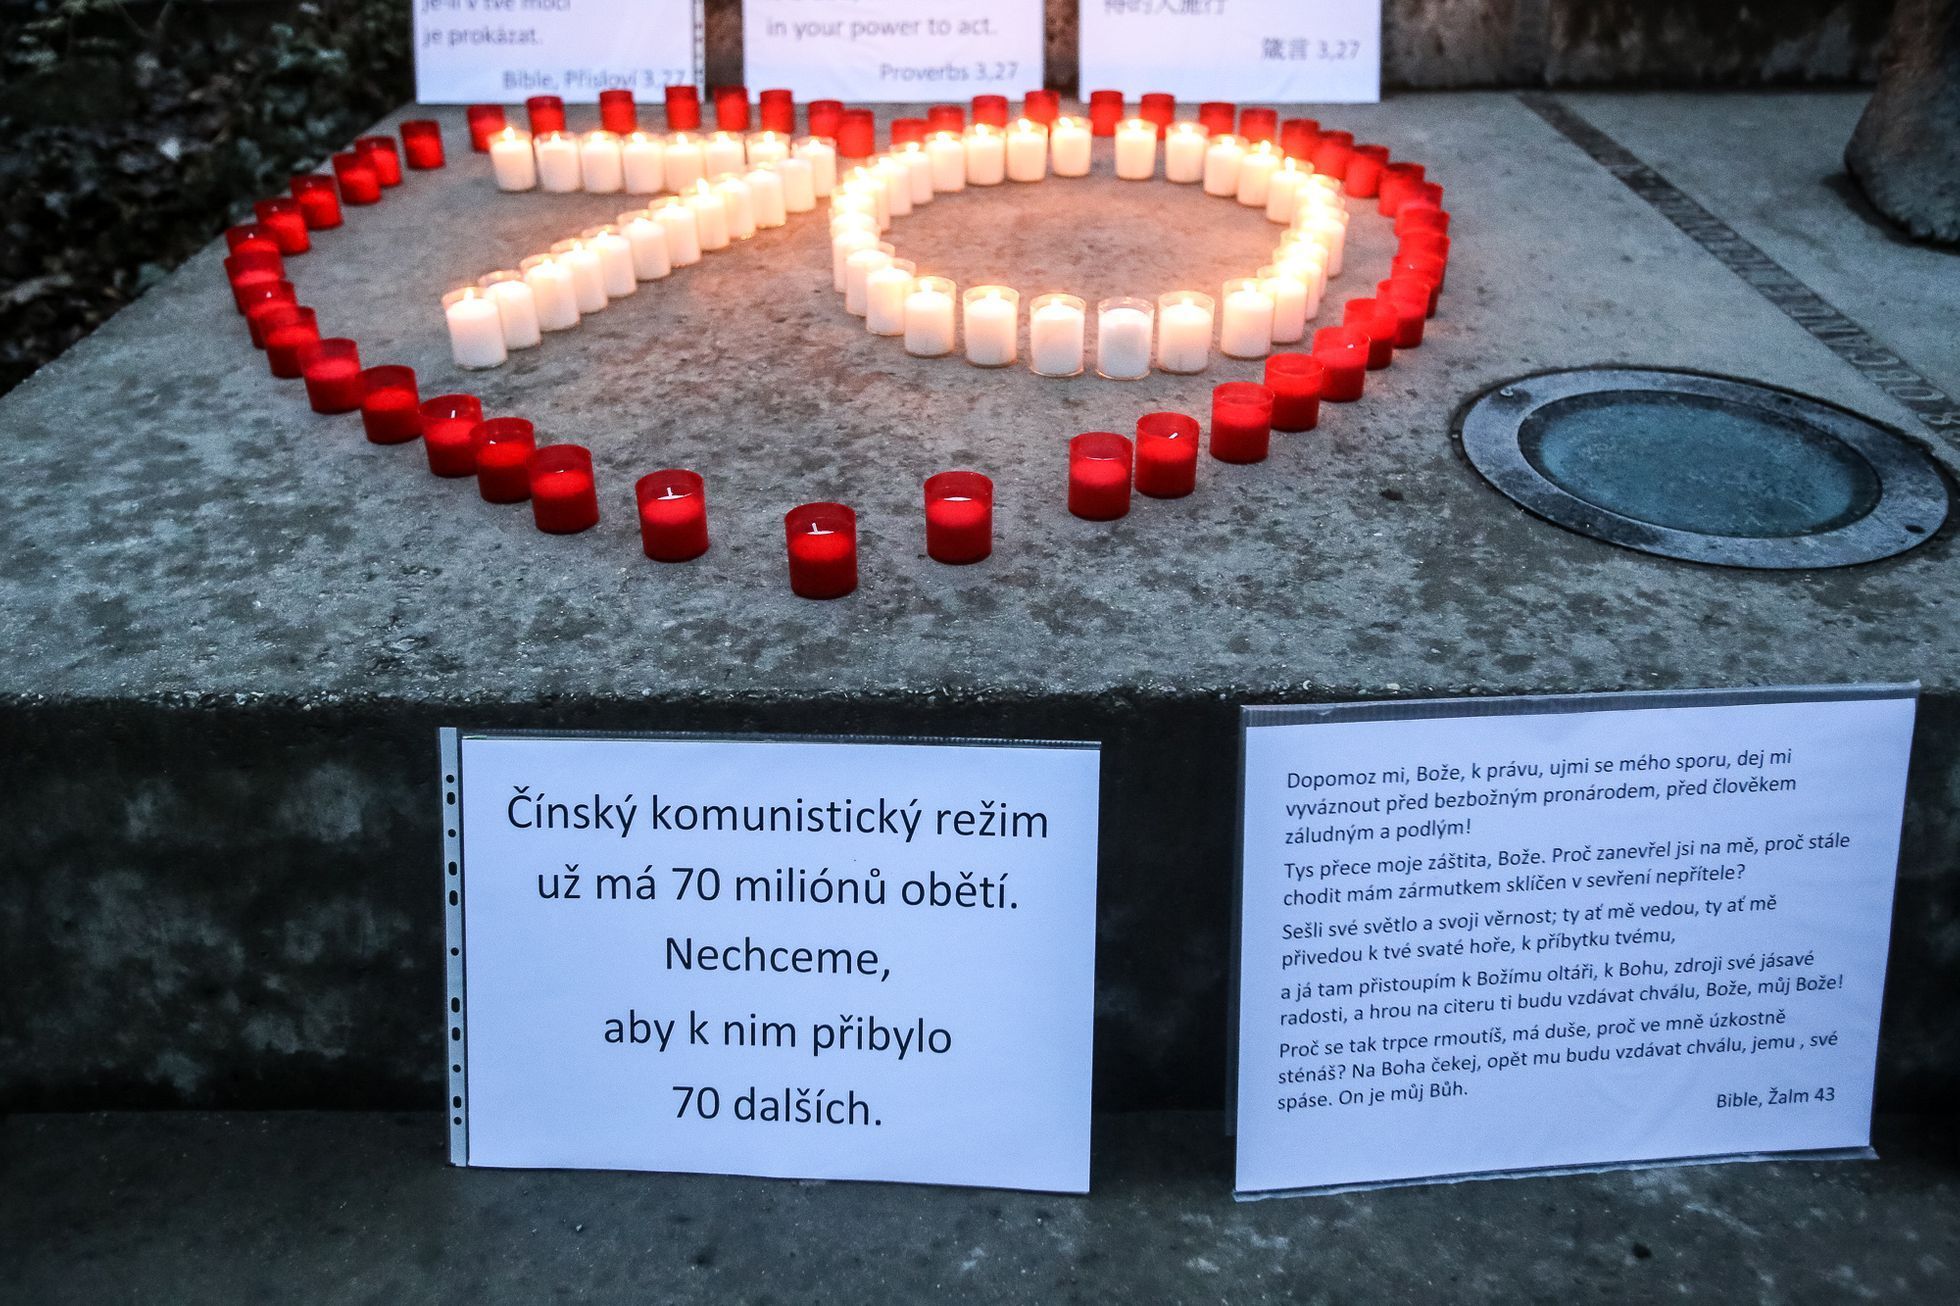 Modlitba za čínské křesťany u památníku komunismu v Praze, 16.3.2018